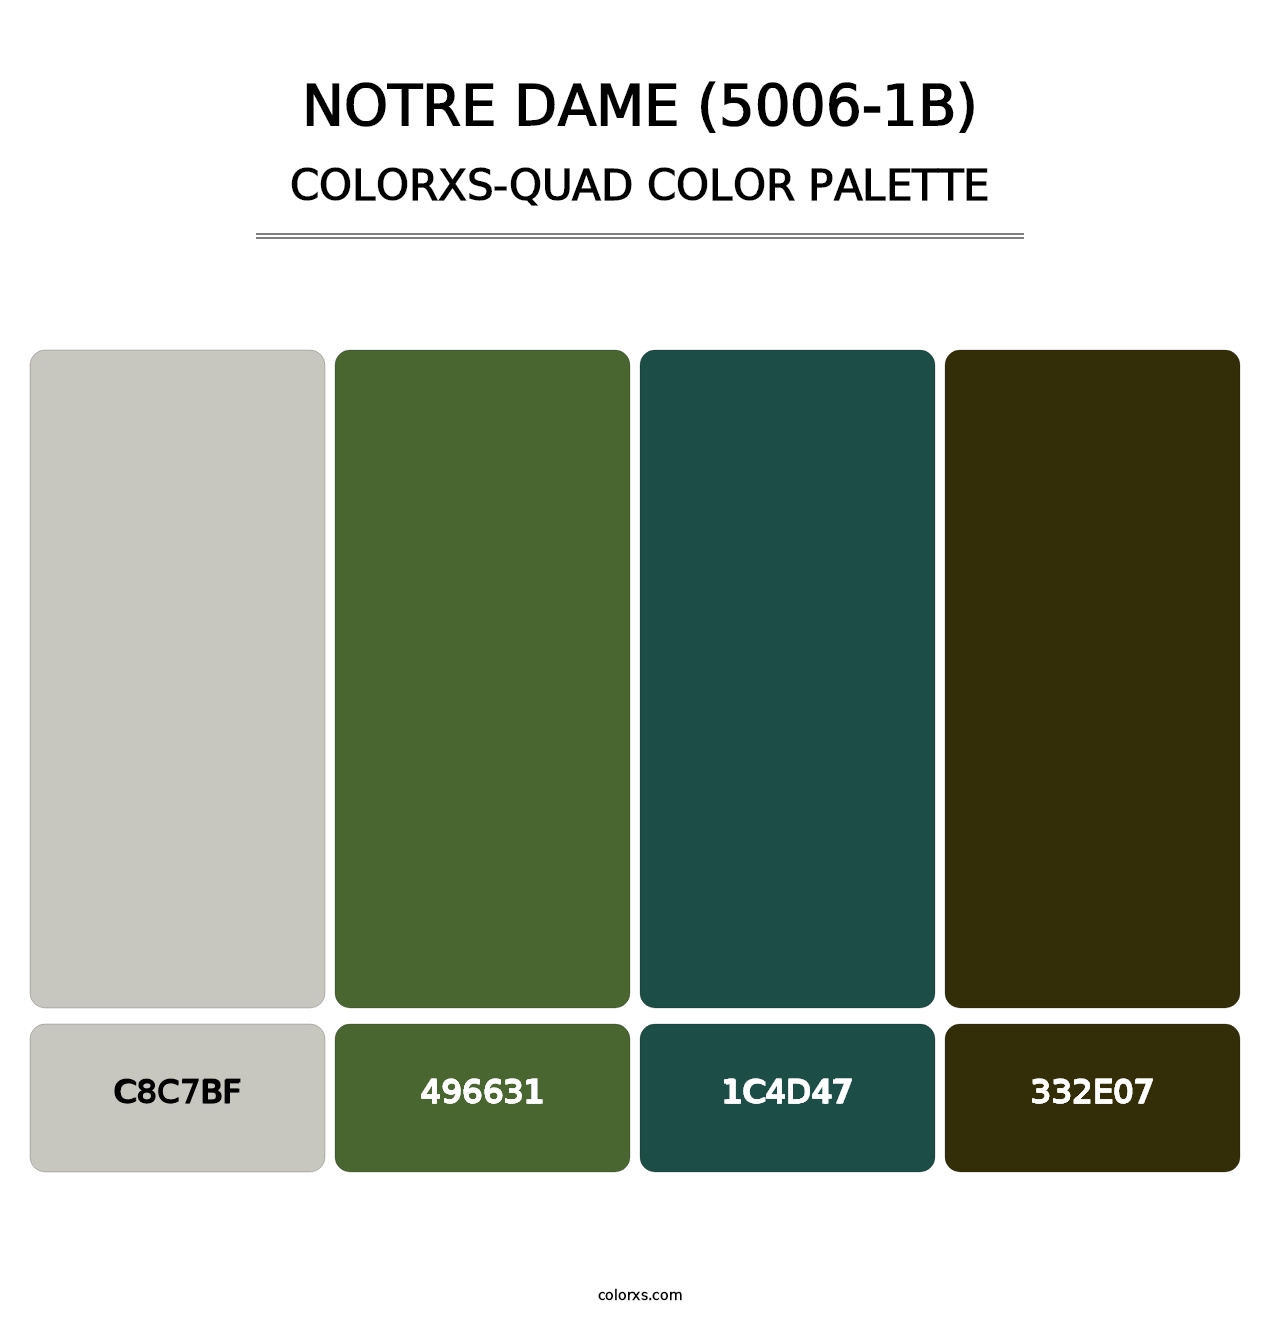 Notre Dame (5006-1B) - Colorxs Quad Palette